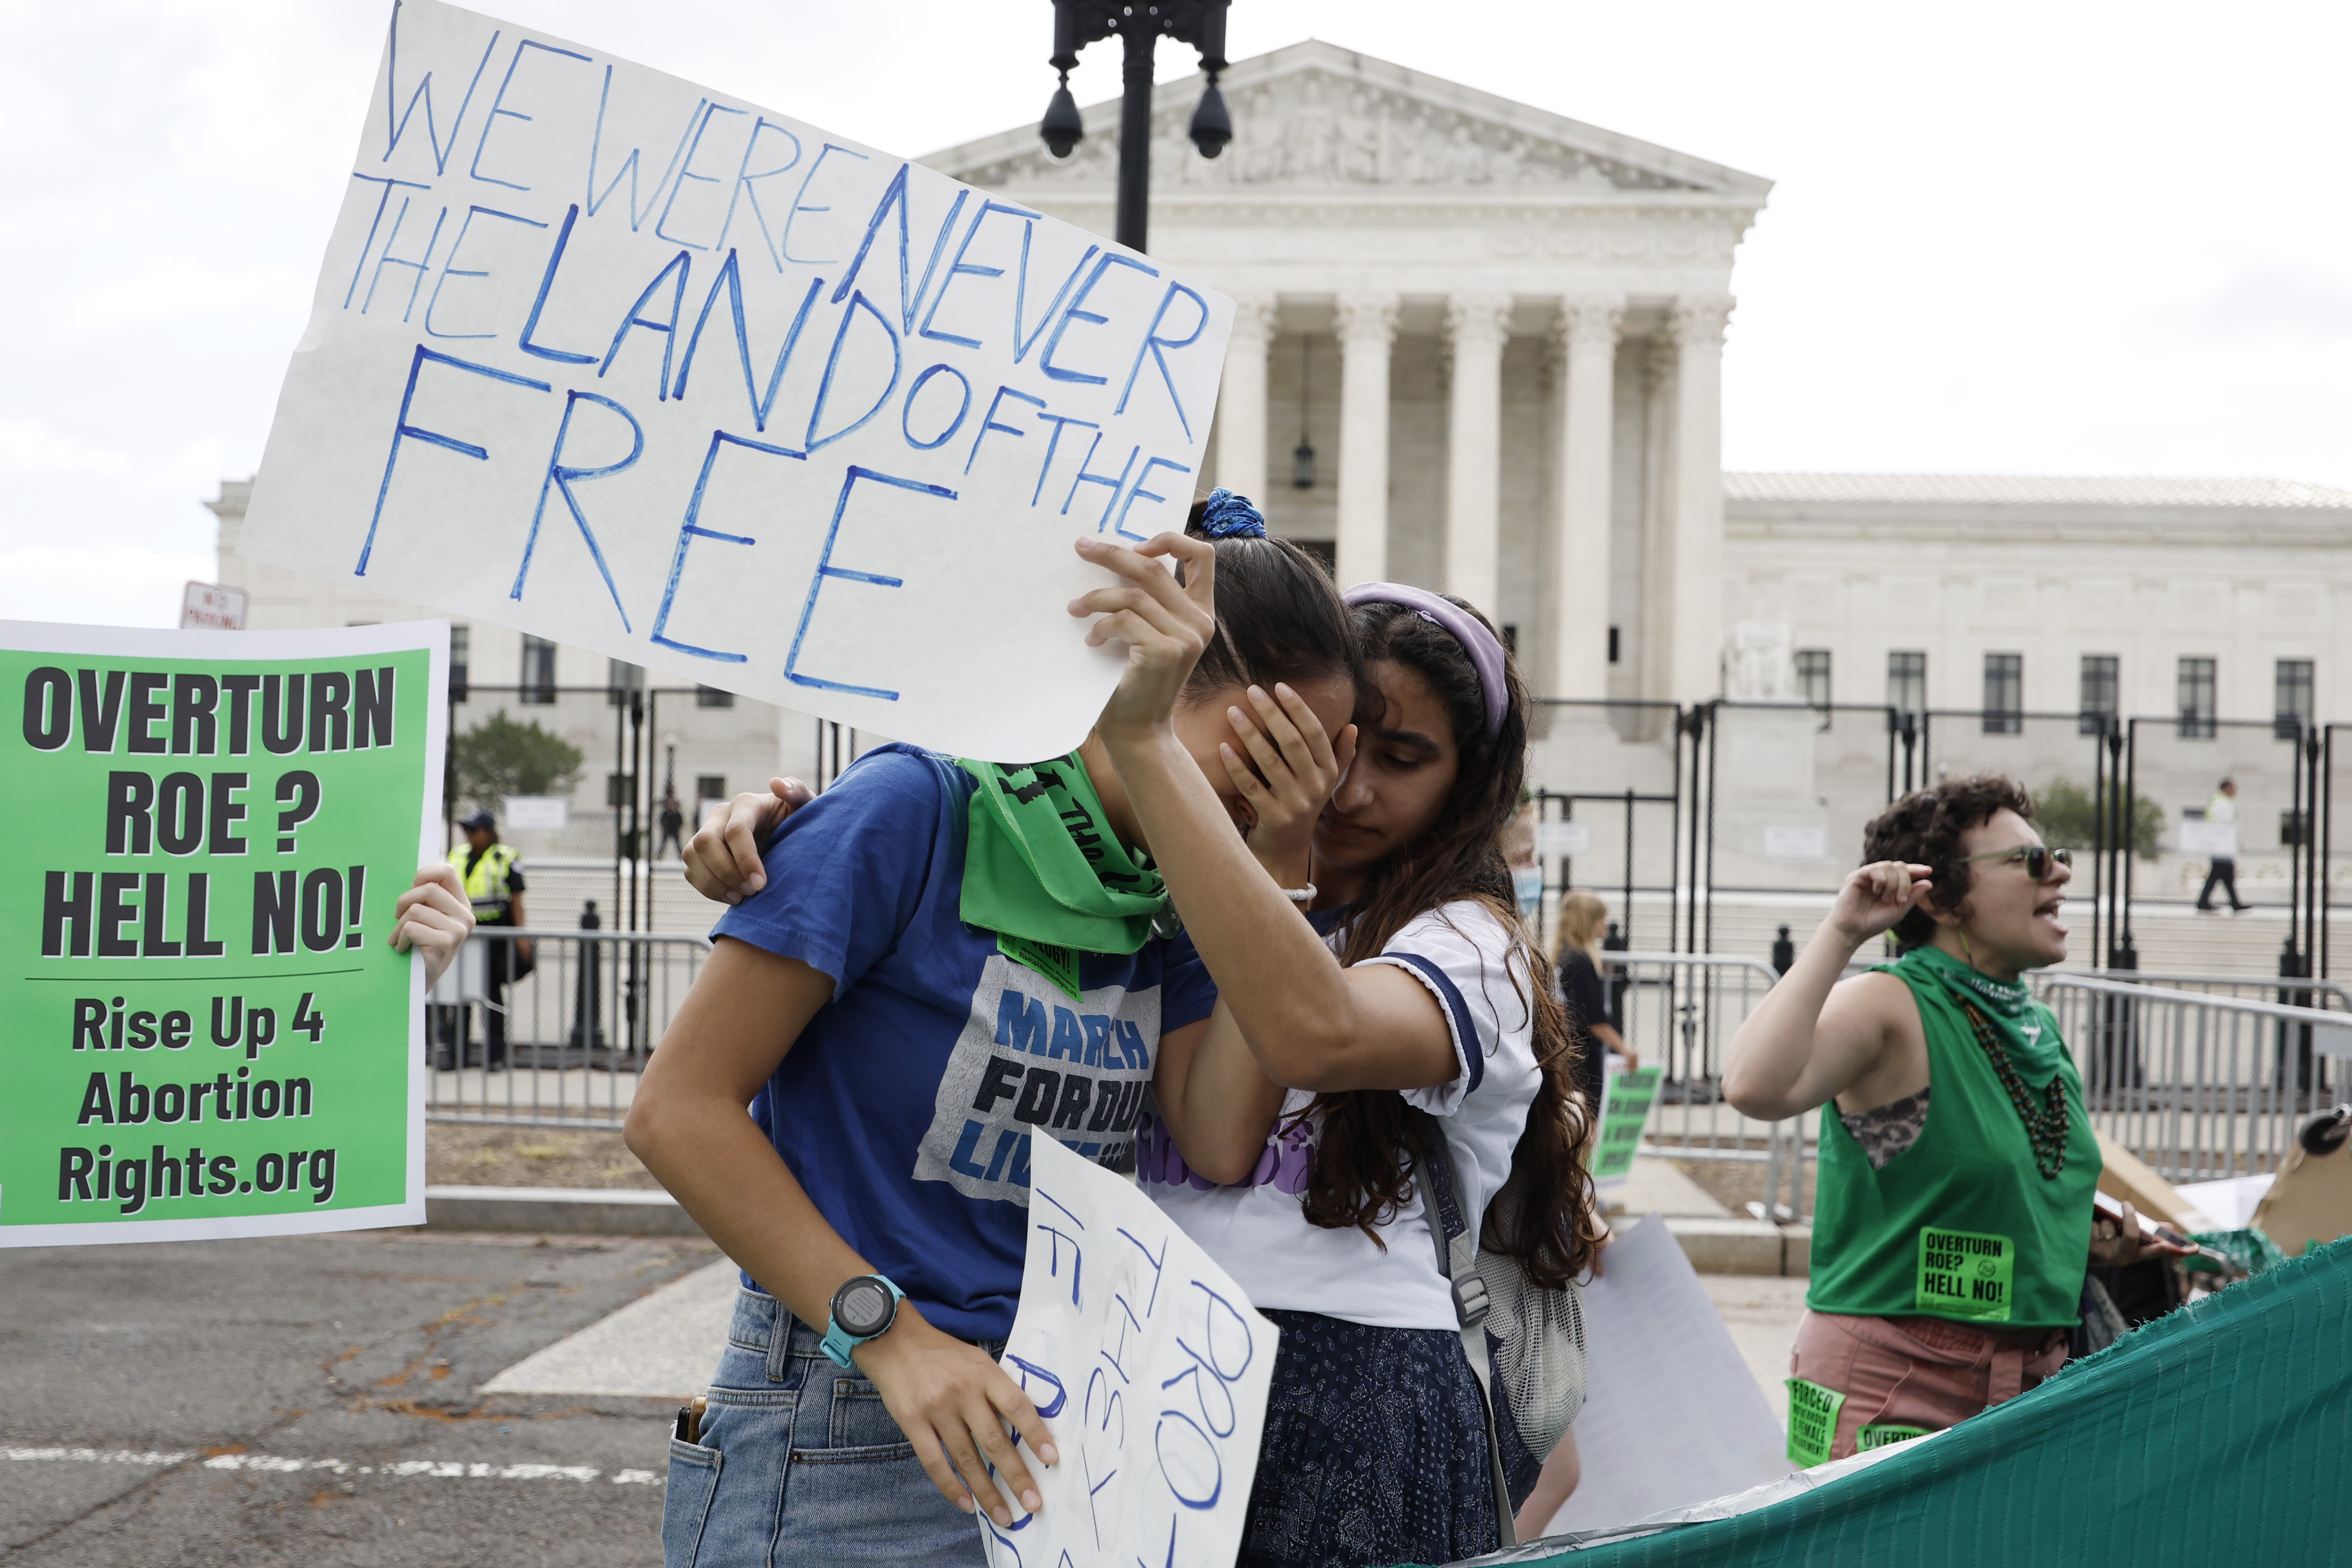 Mulheres e meninas na frente da Suprema Corte dos Estados Unidos, nesta sexta-feira (24), protestando pelo direito de tomar decisão sobre seus próprios corpos e recendo a notícia da suspensão do direito ao aborto no país (Foto: Getty Images)